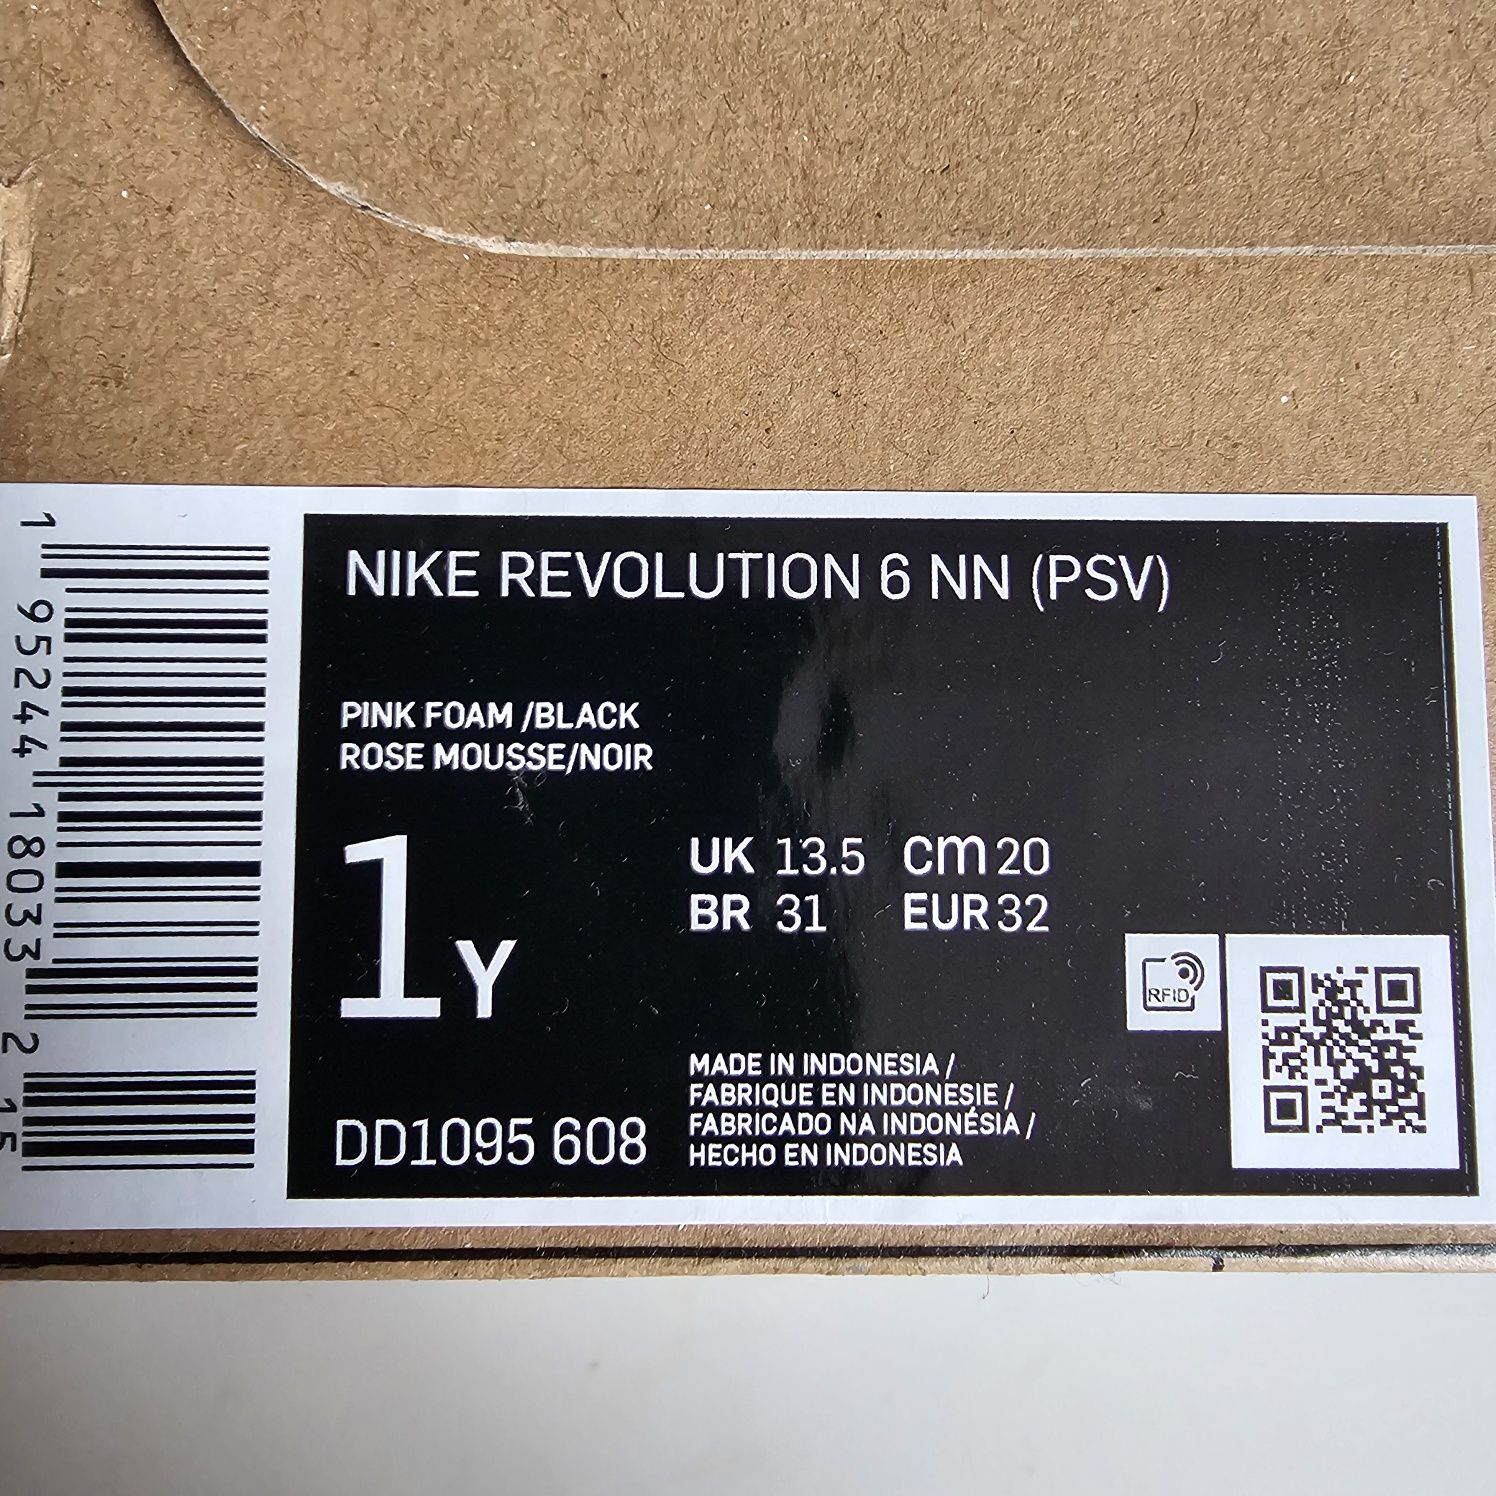 Nike Revolution 6NN, rozmiar 32, wkładka 20cm, NOWE